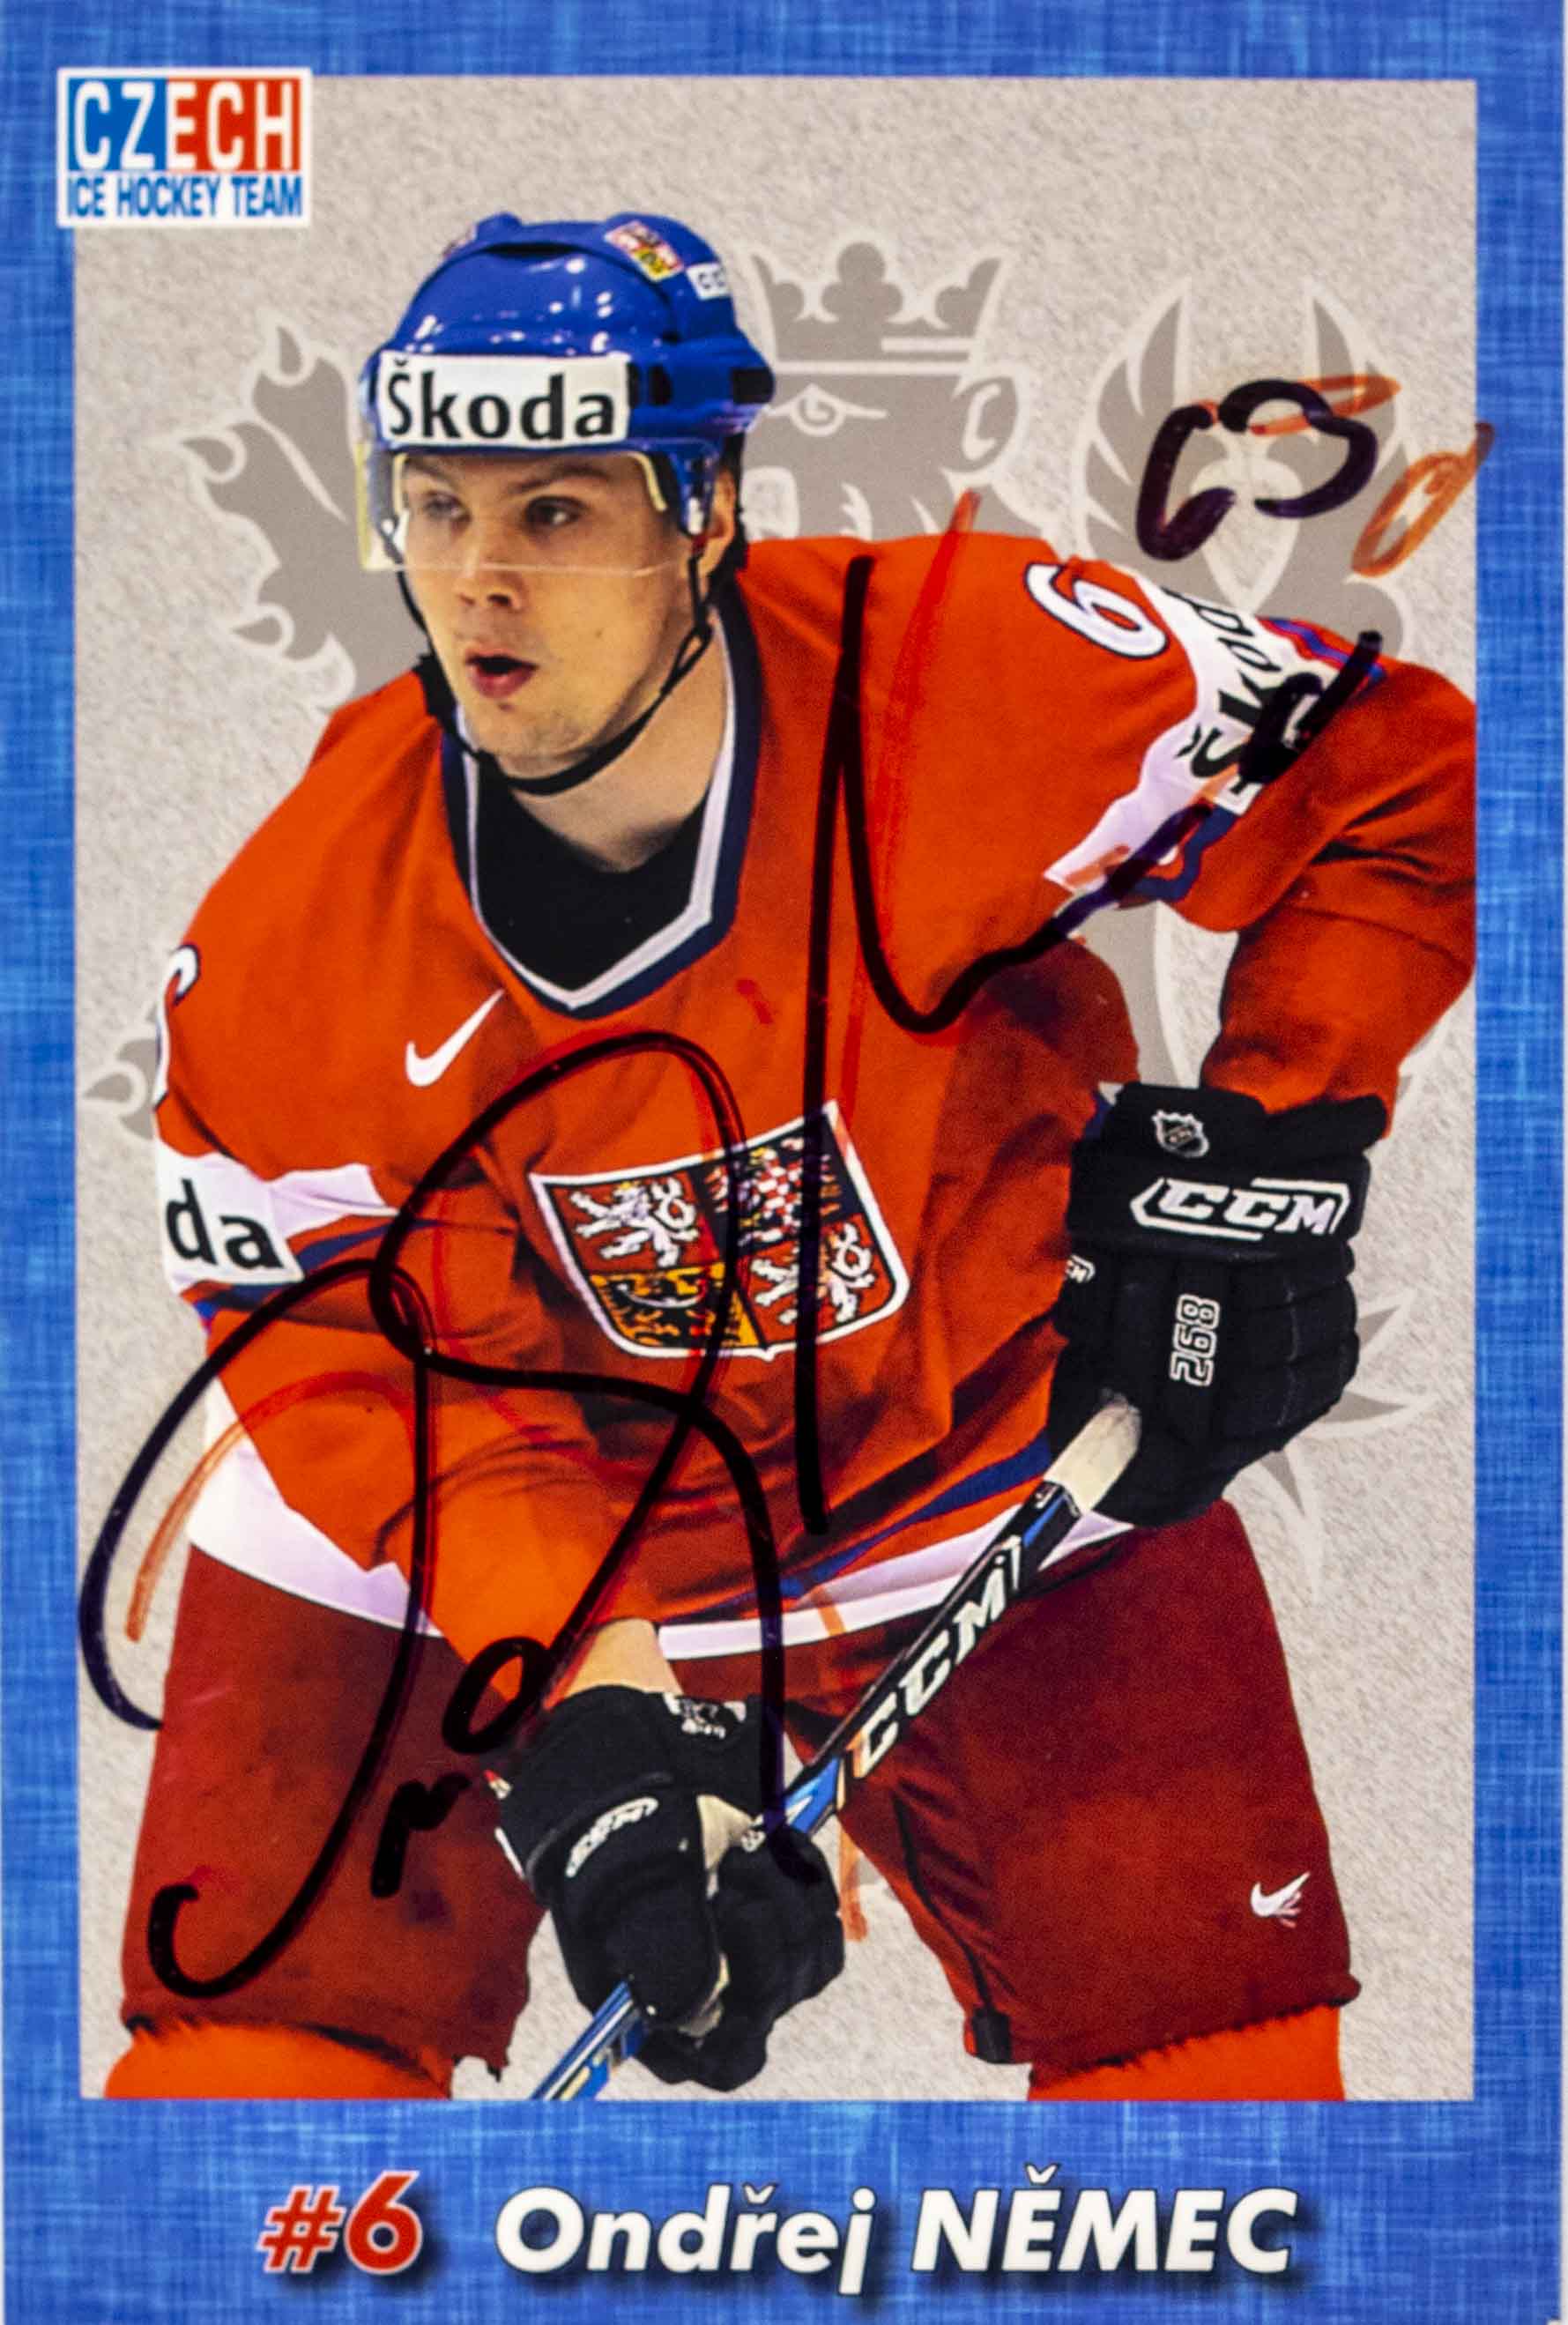 Hokejová karta, Czech Ice hockey team, Indřej Němec, autogram